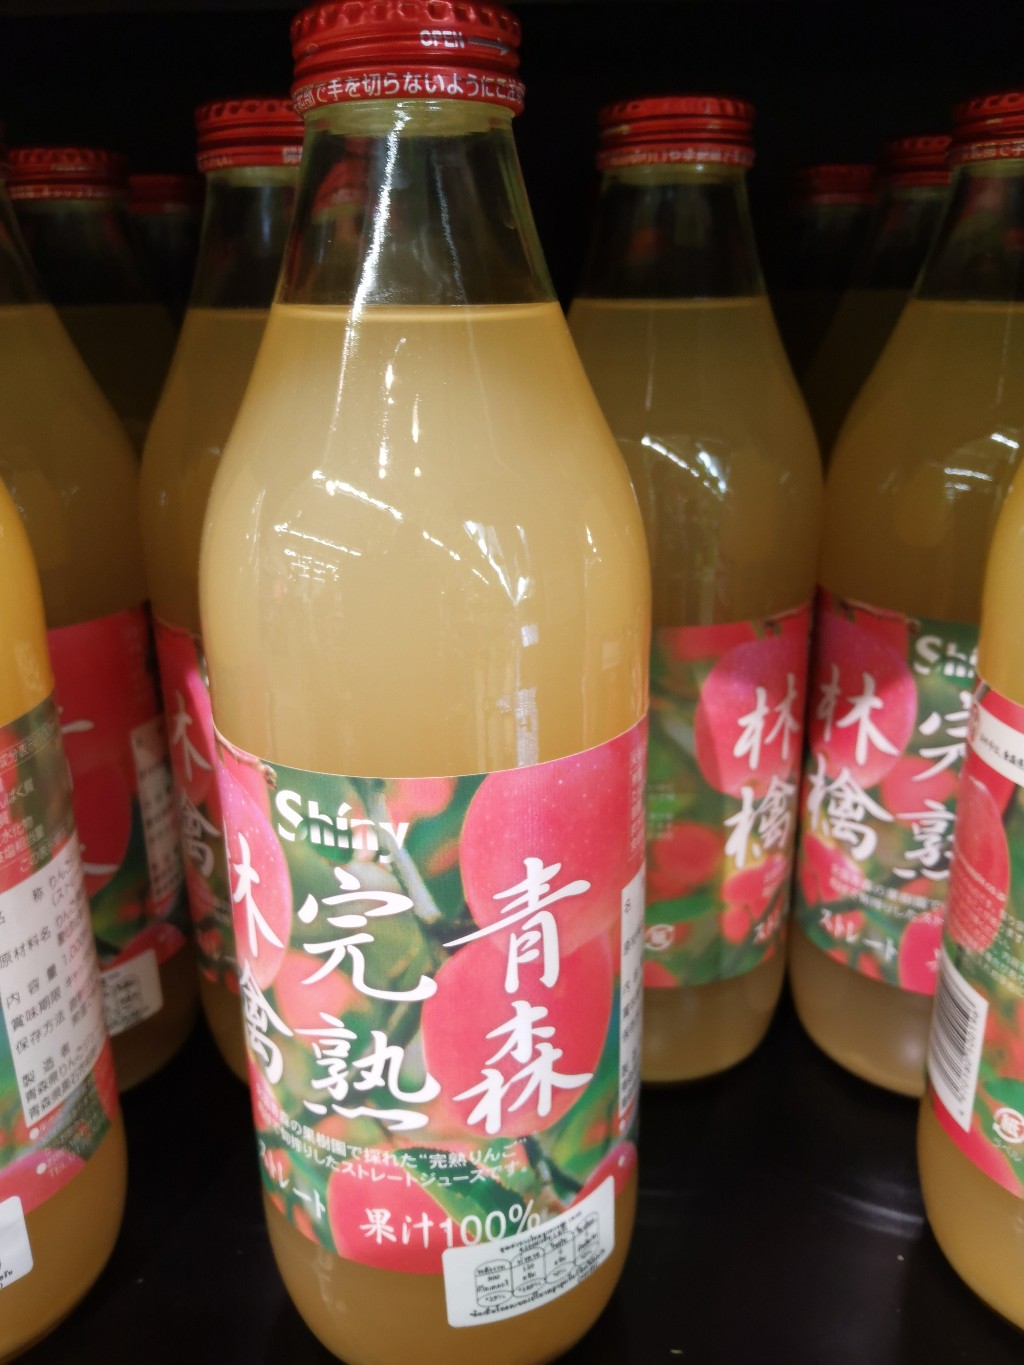 ecook ญี่ปุ่น เครื่องดื่ม น้ำแอปเปิ้ล อาโอโมริ คันจุกุ ริงโงะ hisupa dk shiny apple juice aomori kanjuku ringo 1L